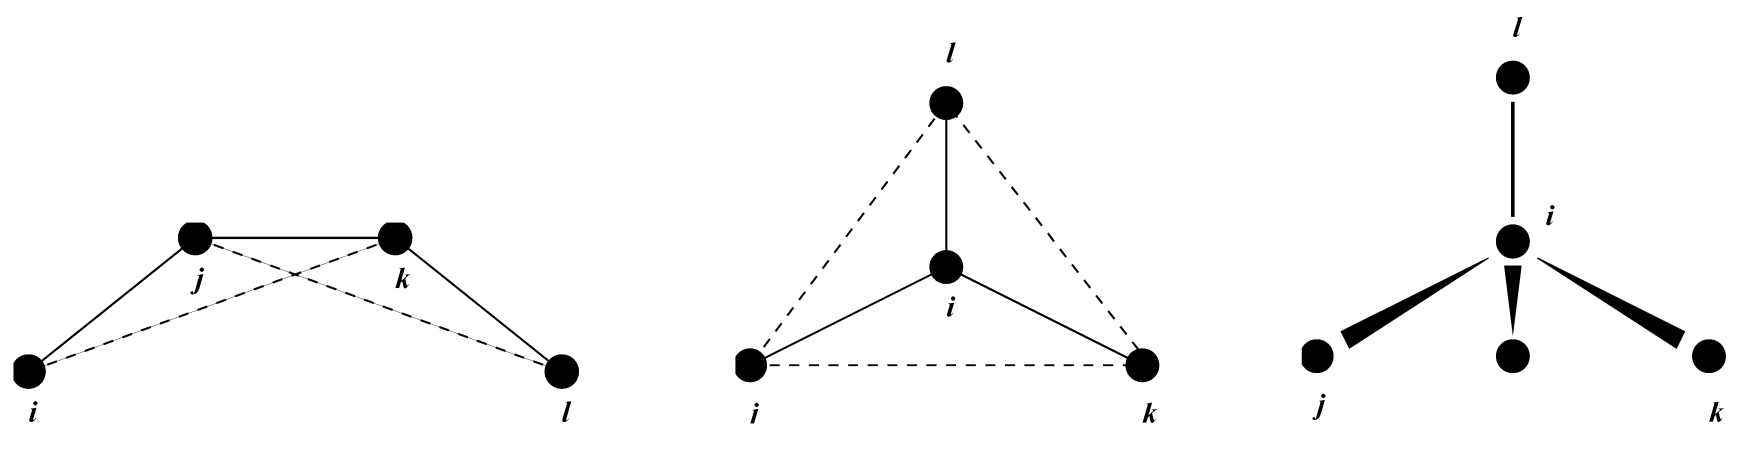 图4.9: 异常二面角原理. 环的面外弯曲（左）, 环的取代（中）, 四面体偏离（右）. 在所有情况下, 异常二面角 $\x$ 被定义为平面 $(i,j,k)$ 和 $(j,k,l)$ 之间的夹角. 